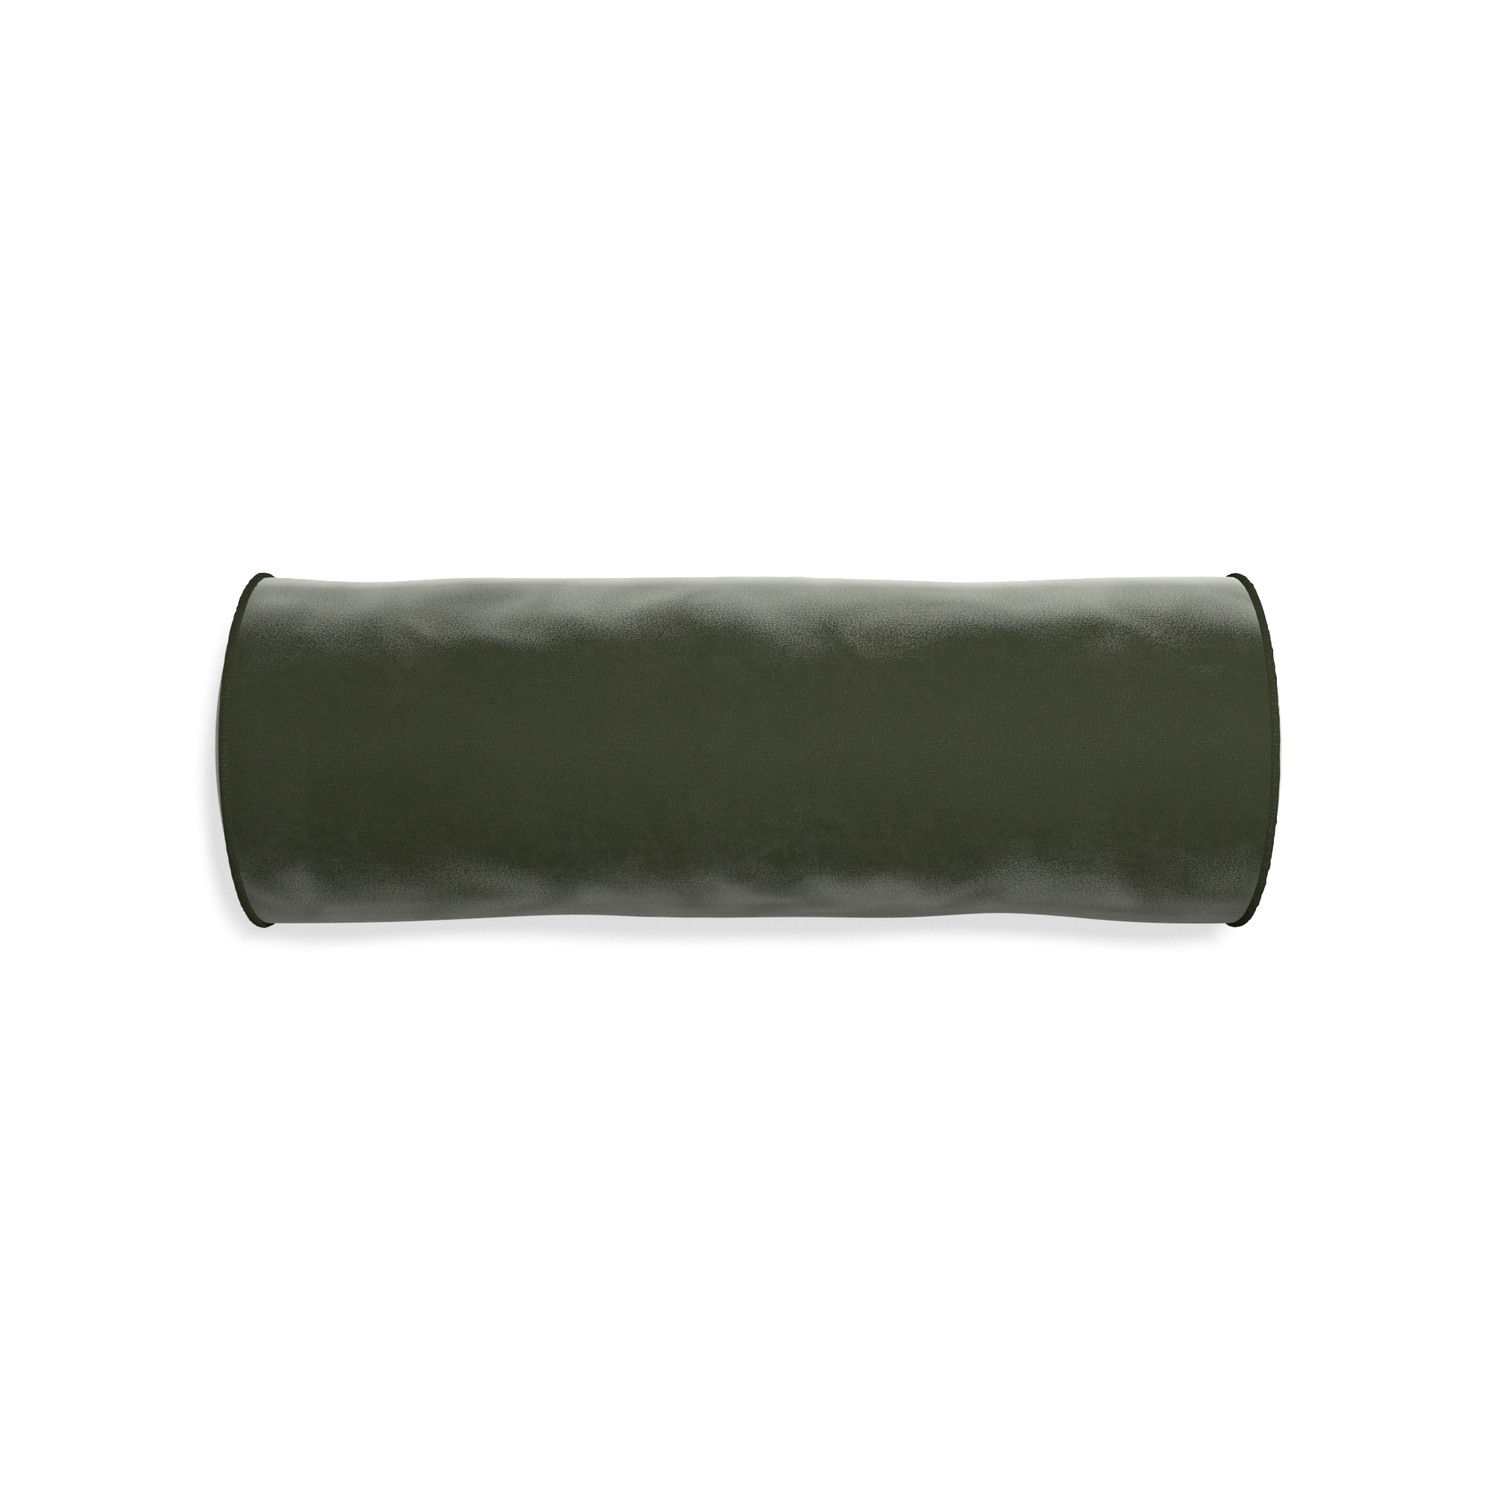 Bolster fern velvet custom pillow with f piping on white background